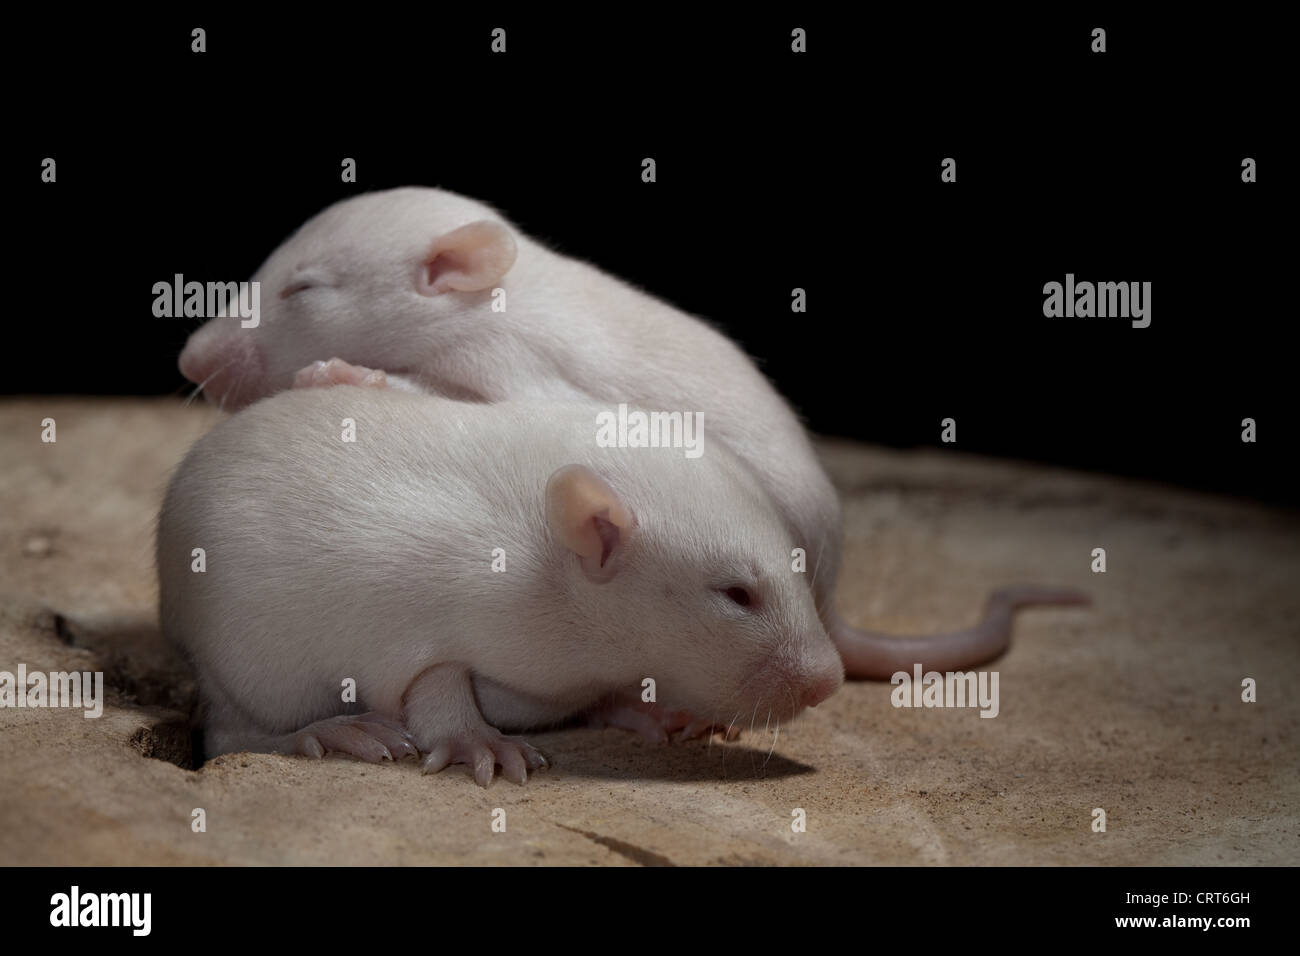 Le rat domestique (Rattus norvegicus). Bébé de 13 jours, 'petit' les rats. Albino, montrant les yeux roses commençant à ouvrir pour la première fois. Banque D'Images